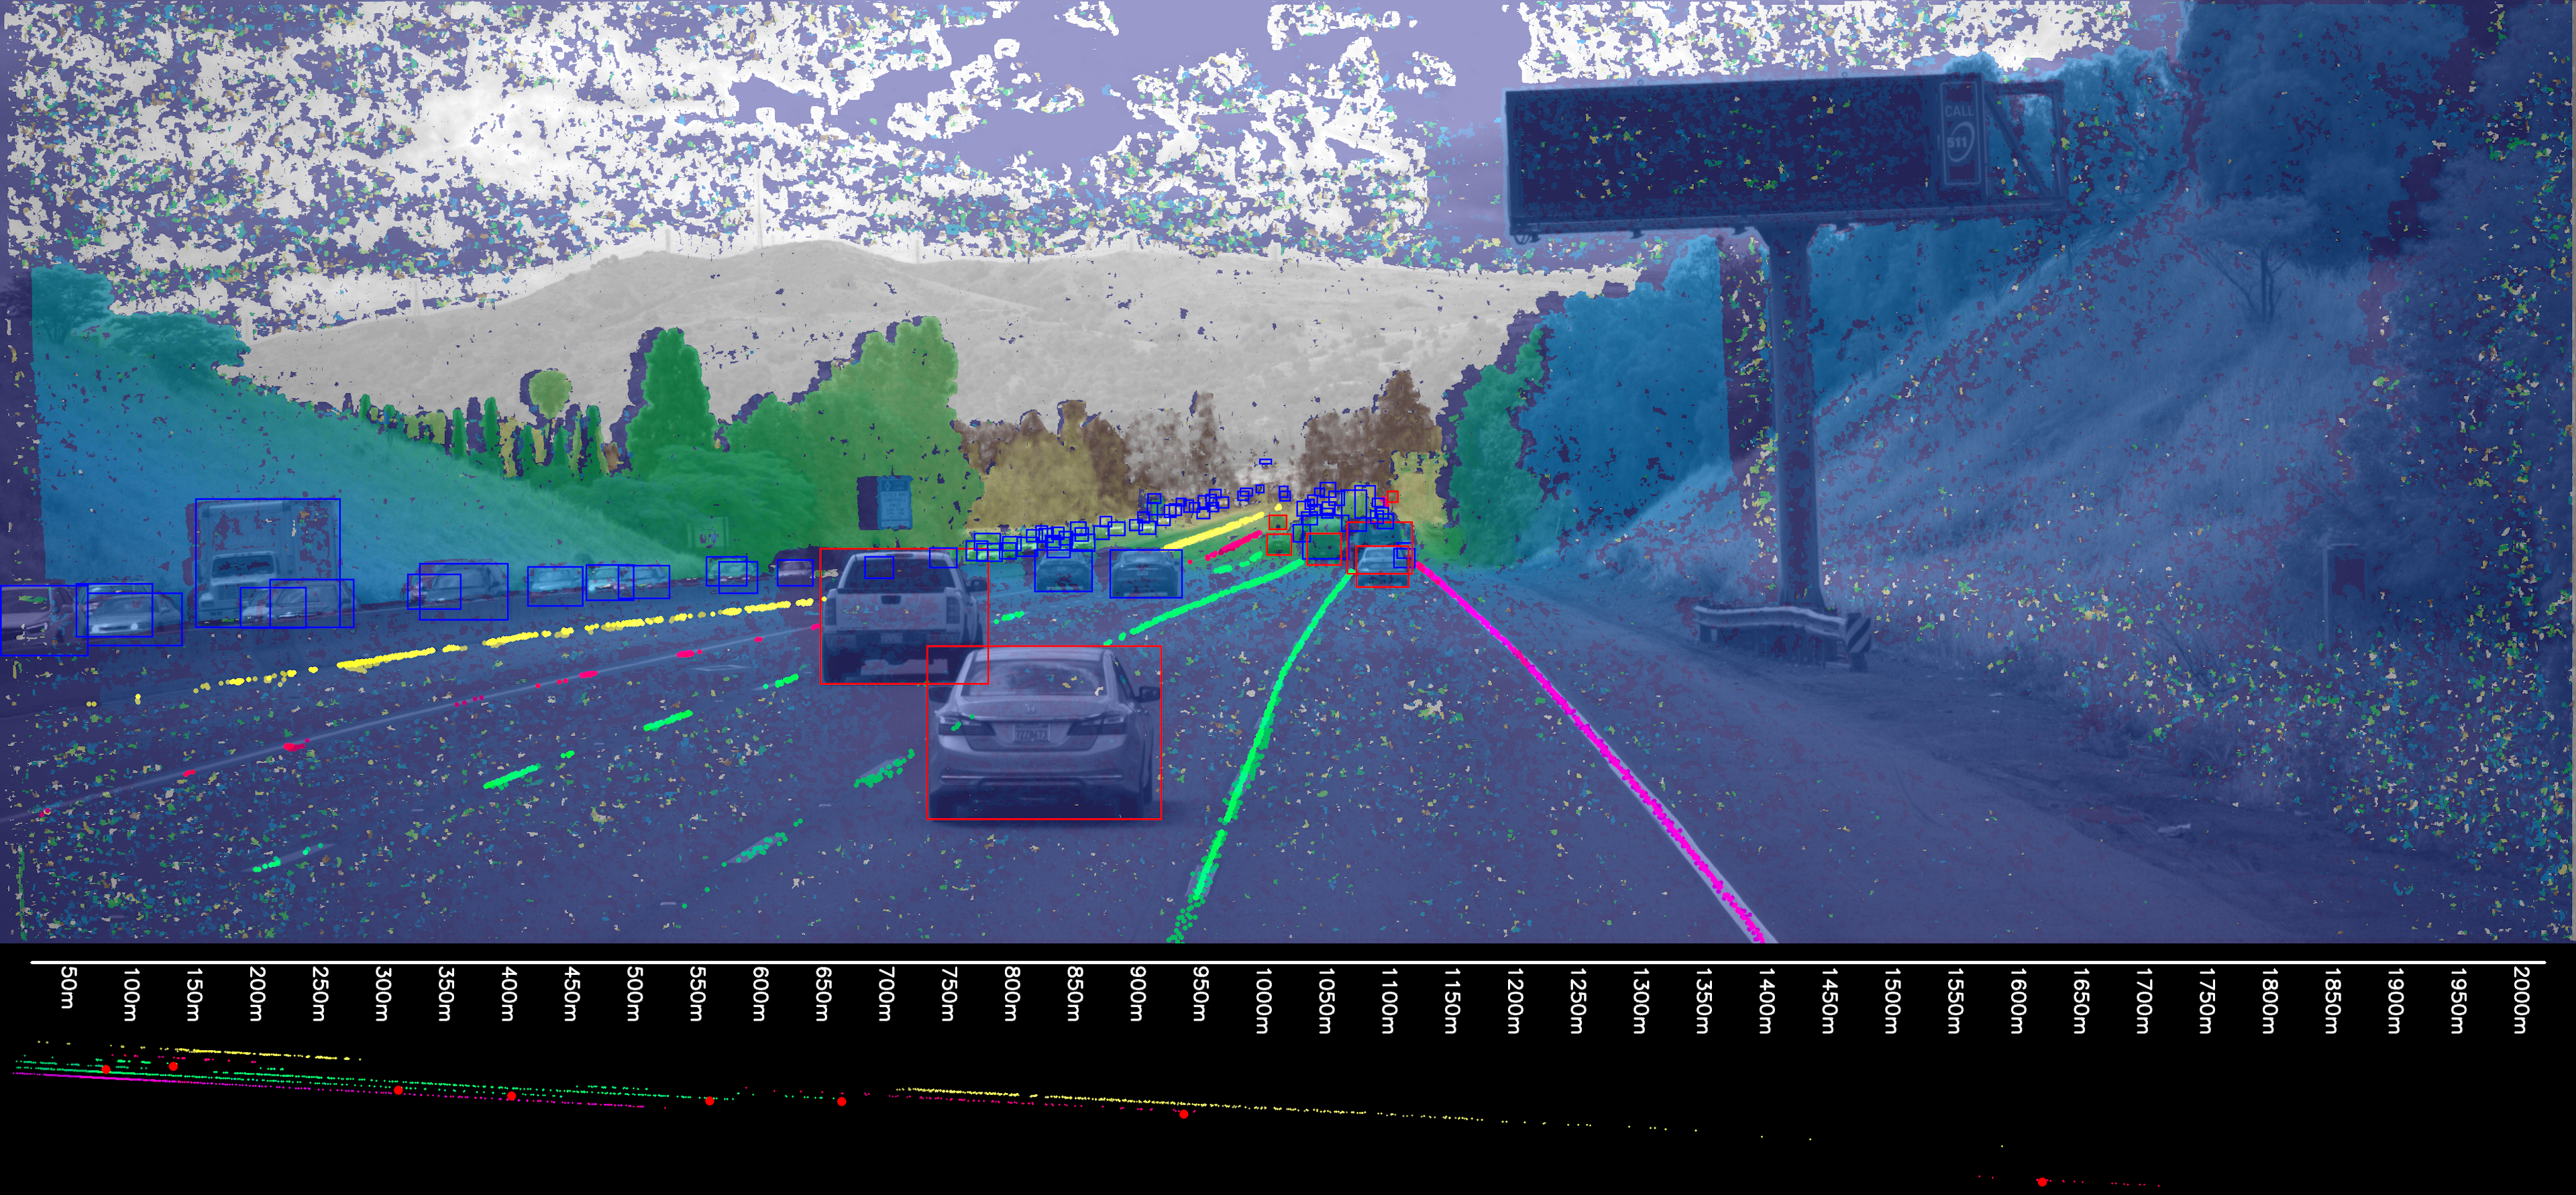 Autonomous driving image showing long range perception